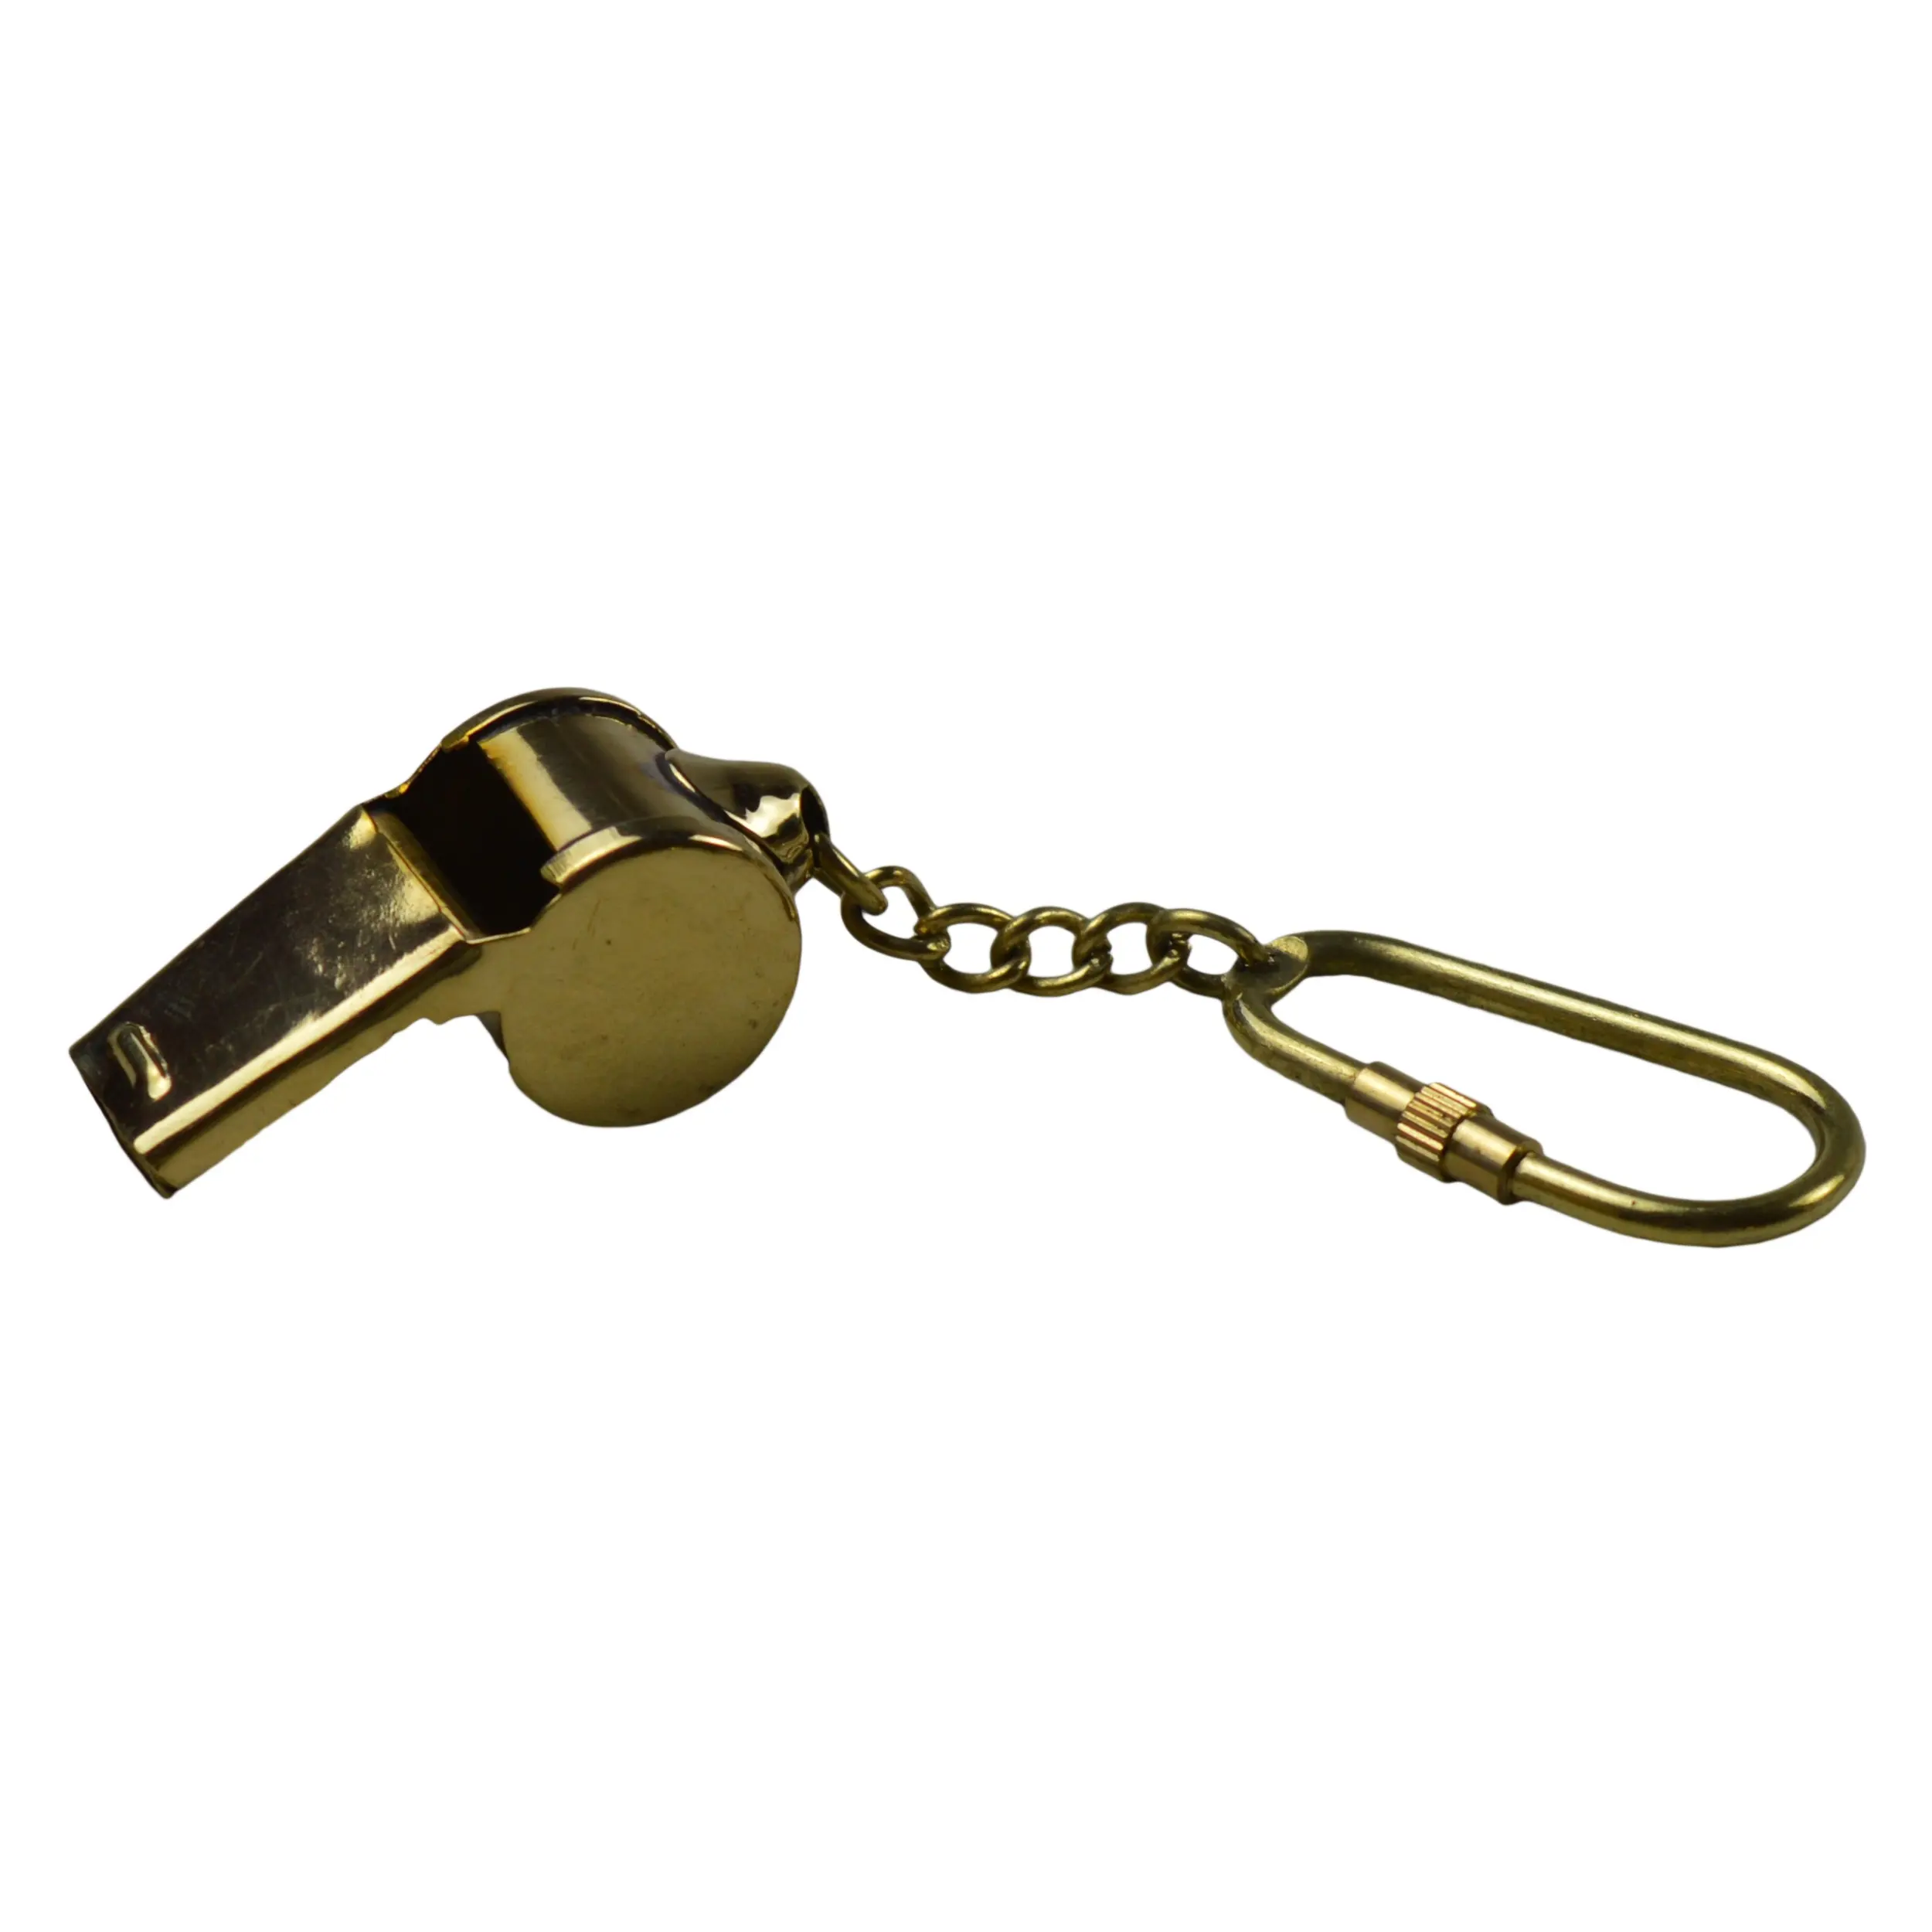 Декоративный брелок для ключей золотого цвета с декоративным латунным металлическим дизайном, брелок для ключей в форме лучшего свистка